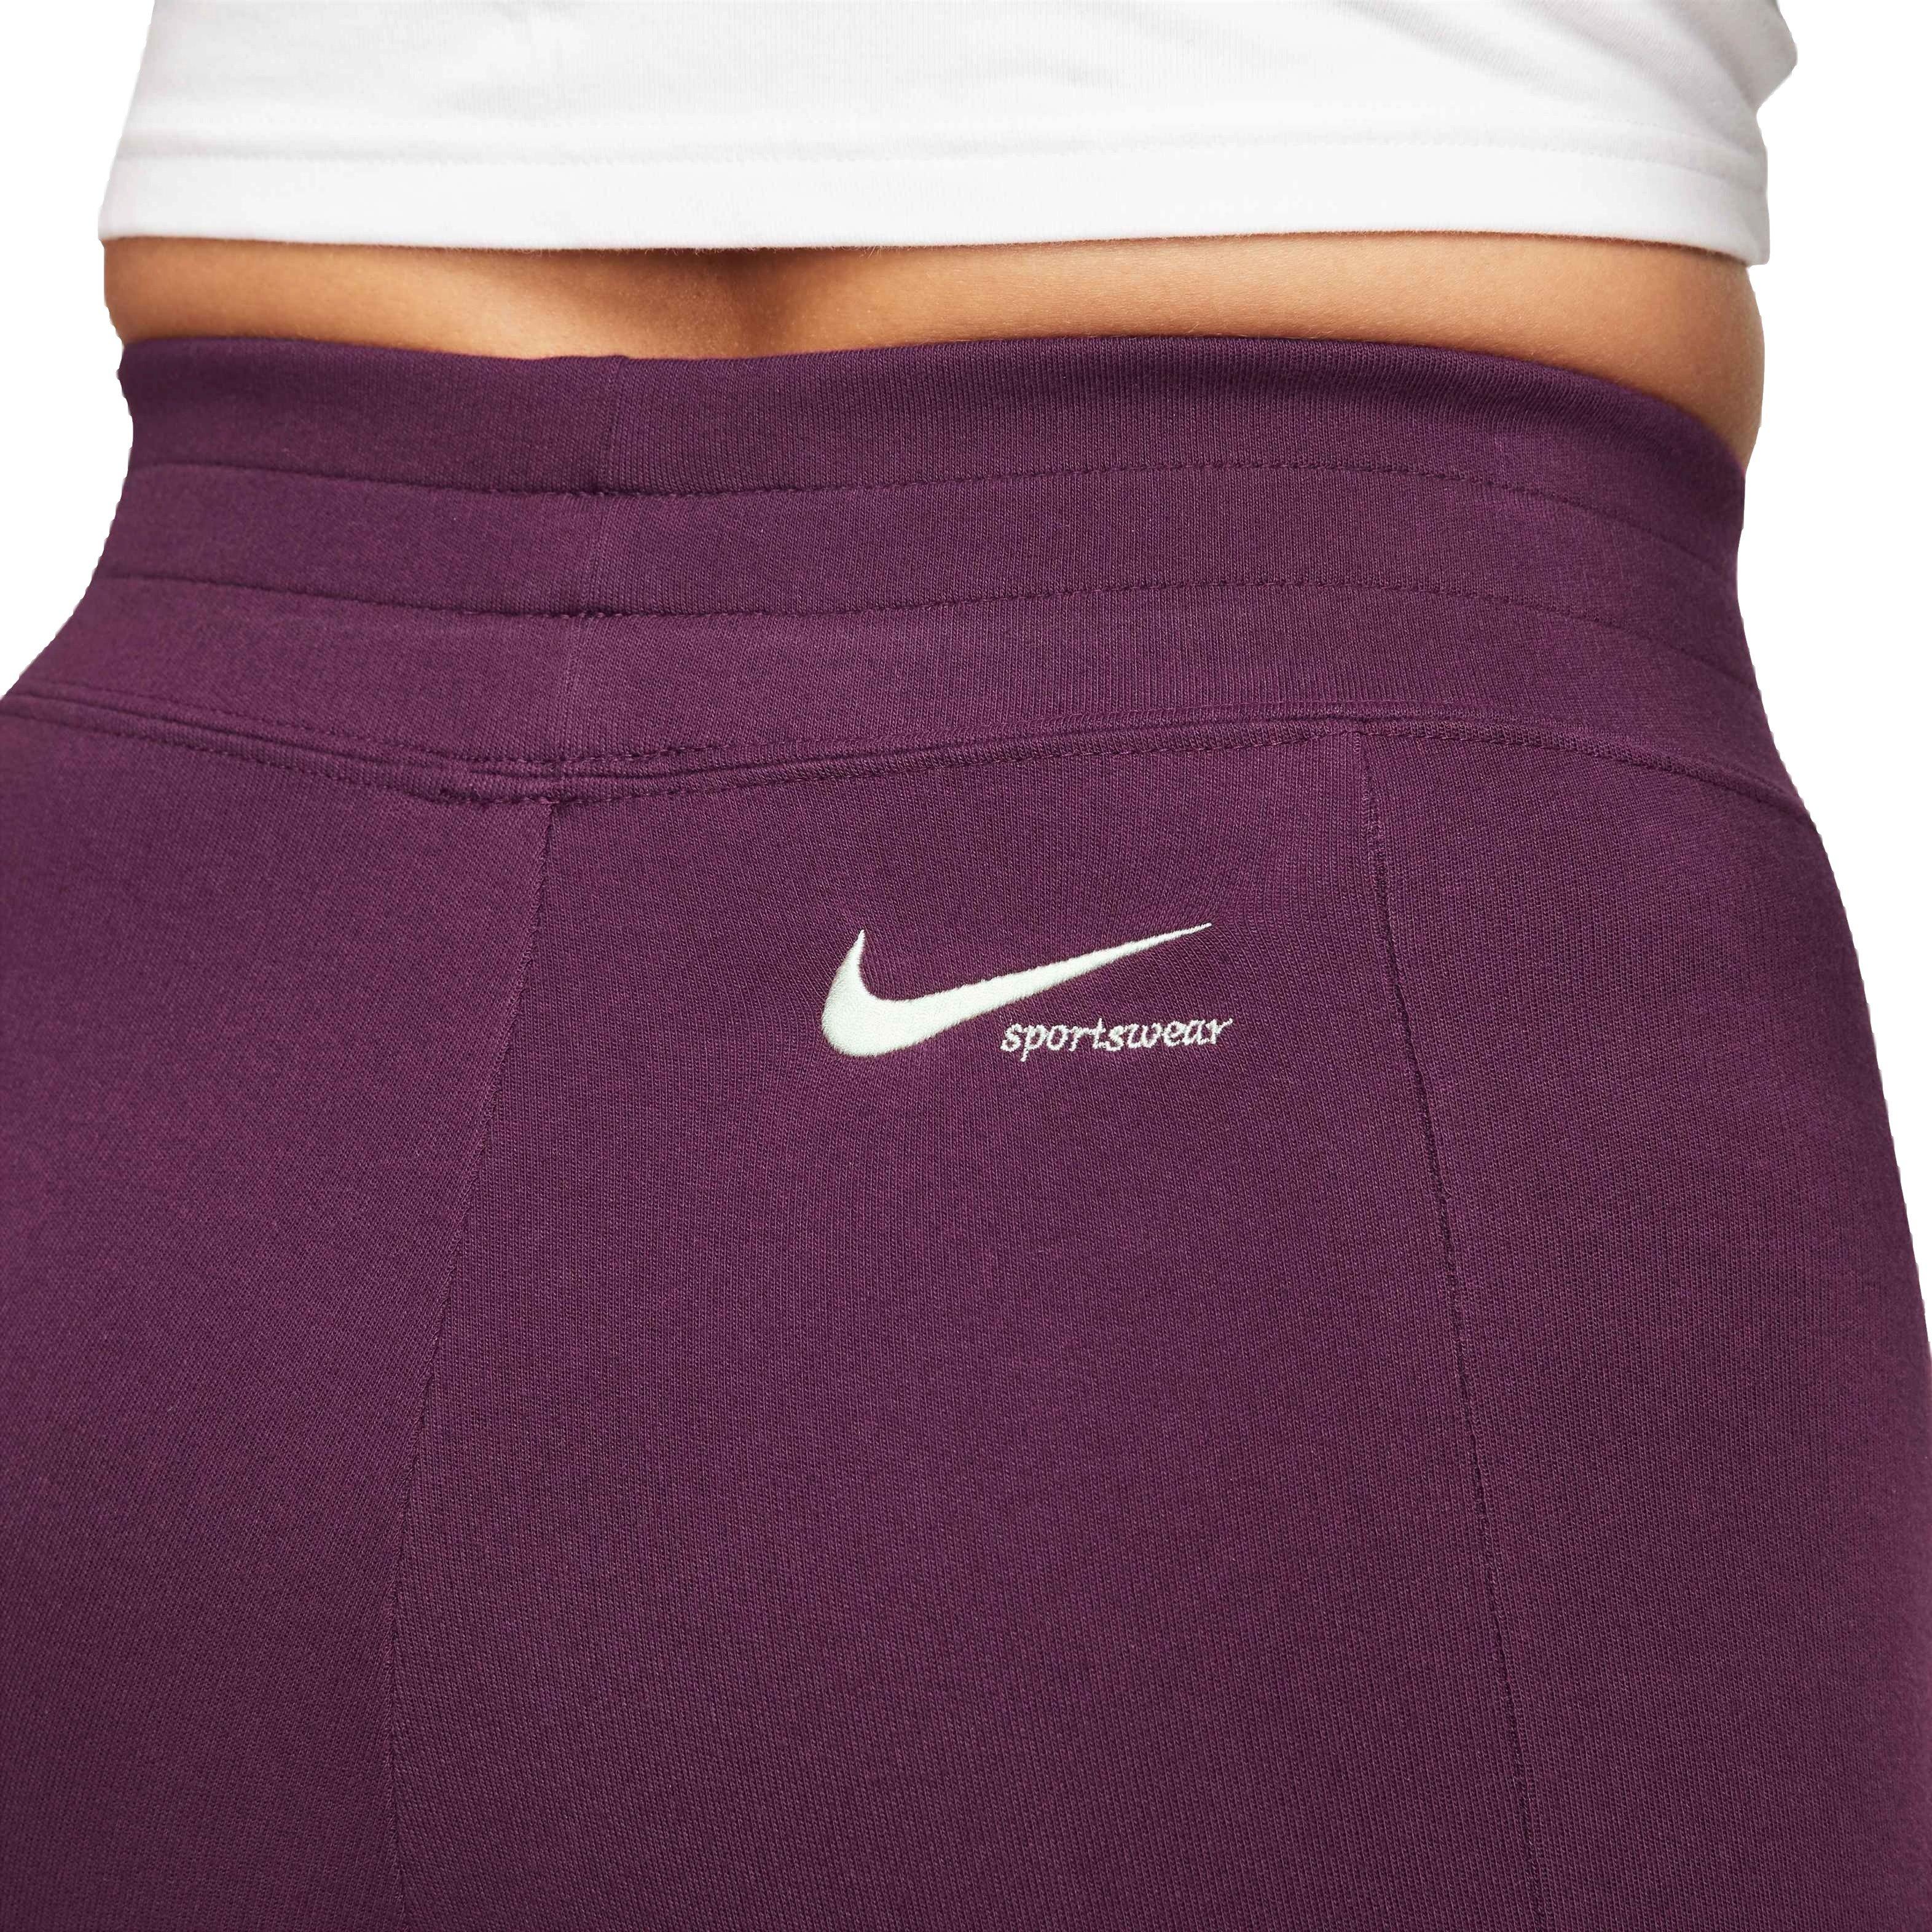 Nike Women's Sportswear Mock Neck Top - Maroon - Hibbett